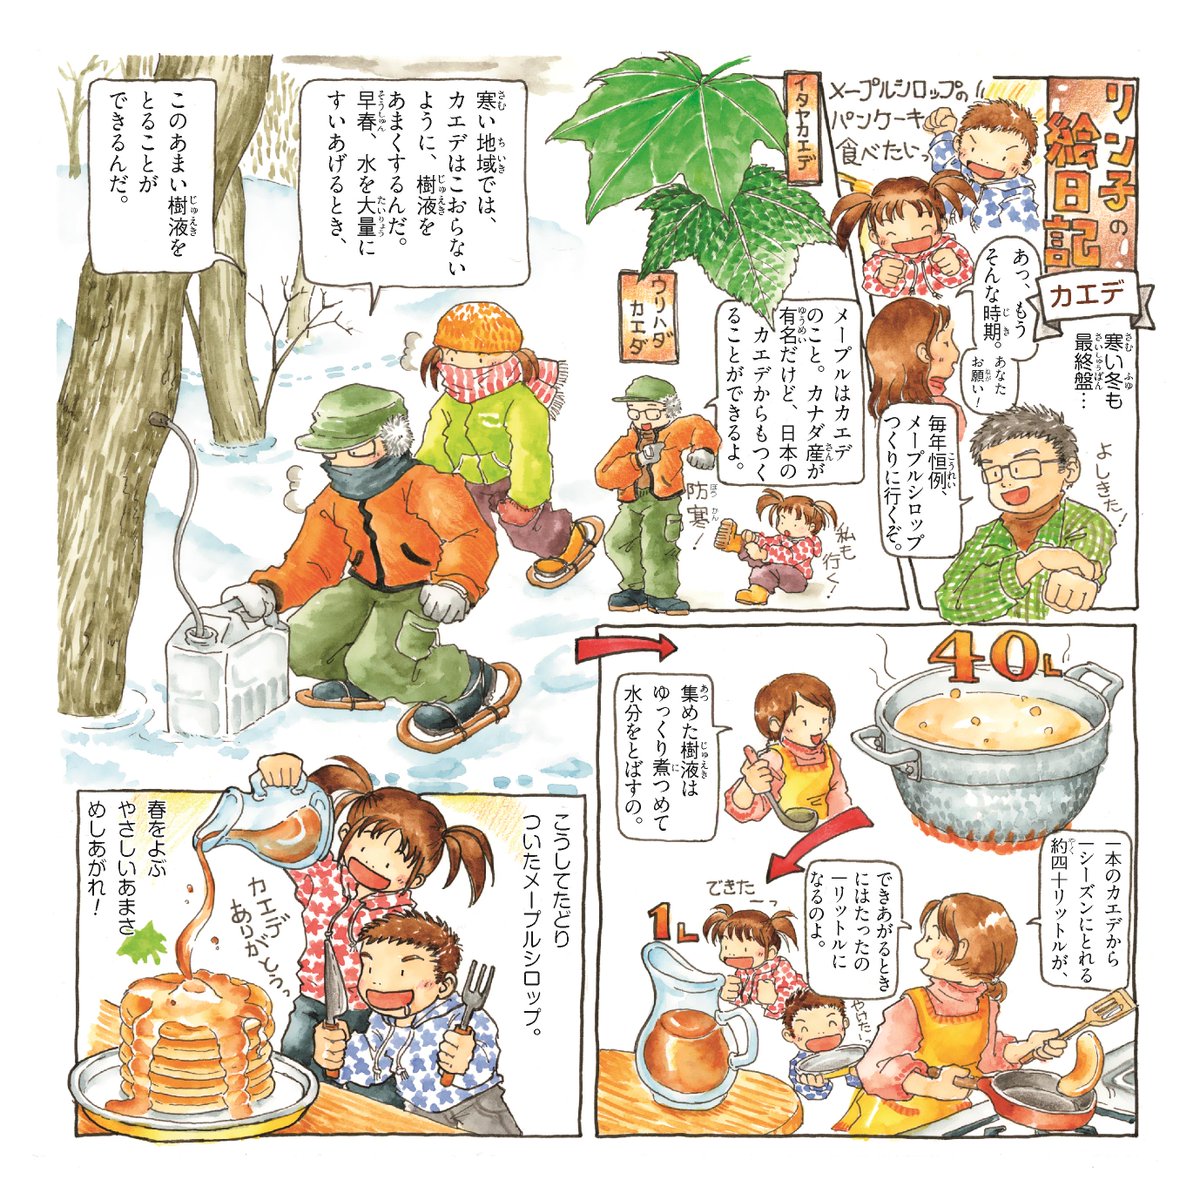 農林水産省 日本人と木の付き合いをご紹介する 樹木漫画 リン子の絵日記 から カエデ をお送りします カエデは 葉の形がカエルの手に似ているので カエル手 が変化してカエデになったそうです 国産メープルシロップ味わってみてね 樹木